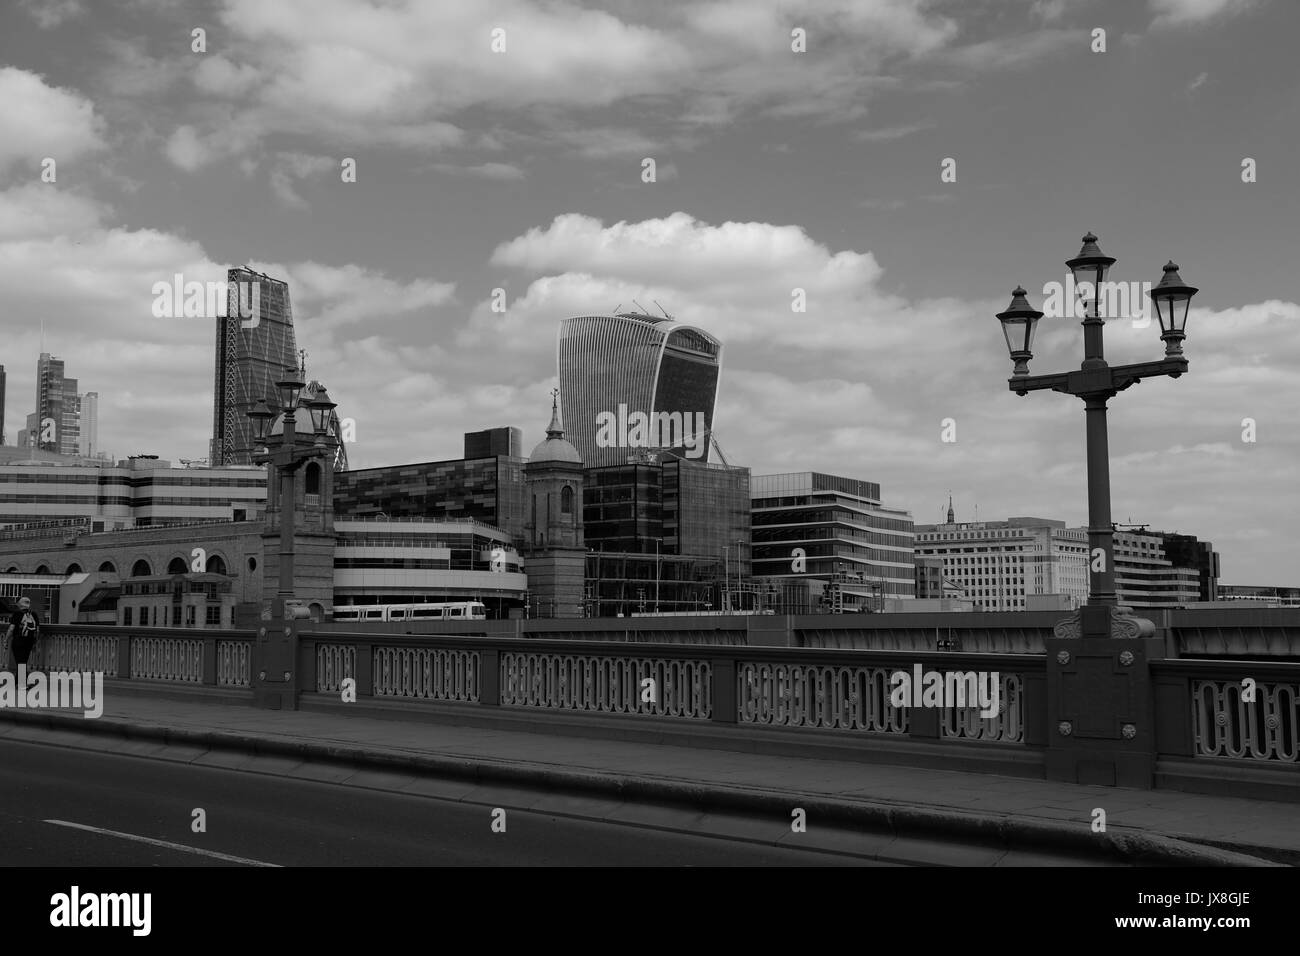 La vue de Southwark Bridge montrant un train de quitter Cannon Street Station, et les gratte-ciel de Londres en arrière-plan. Banque D'Images